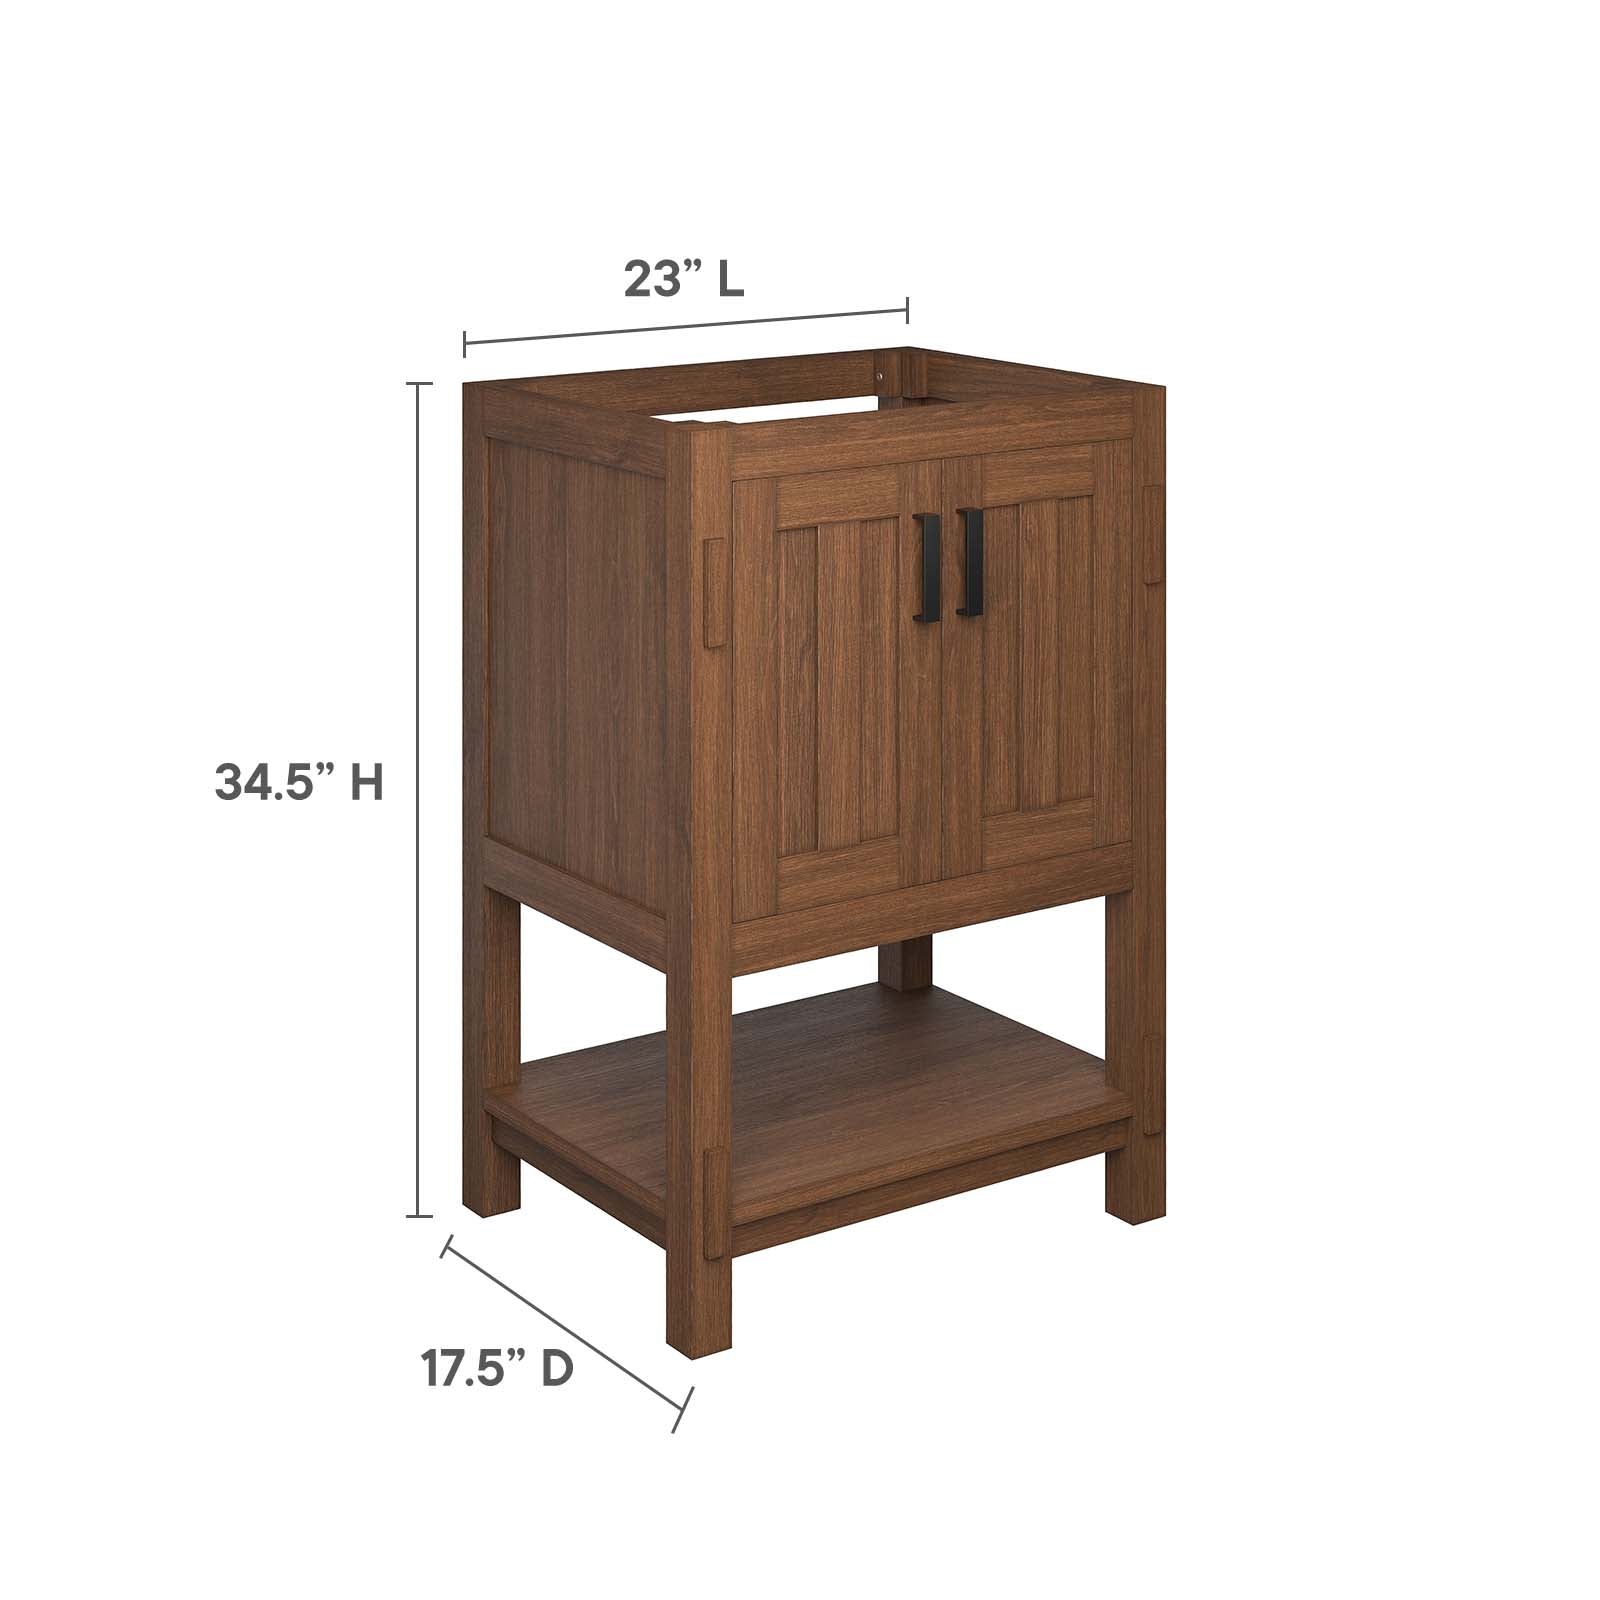 Ashlyn 24” Wood Bathroom Vanity Cabinet (Sink Basin Not Included) - East Shore Modern Home Furnishings